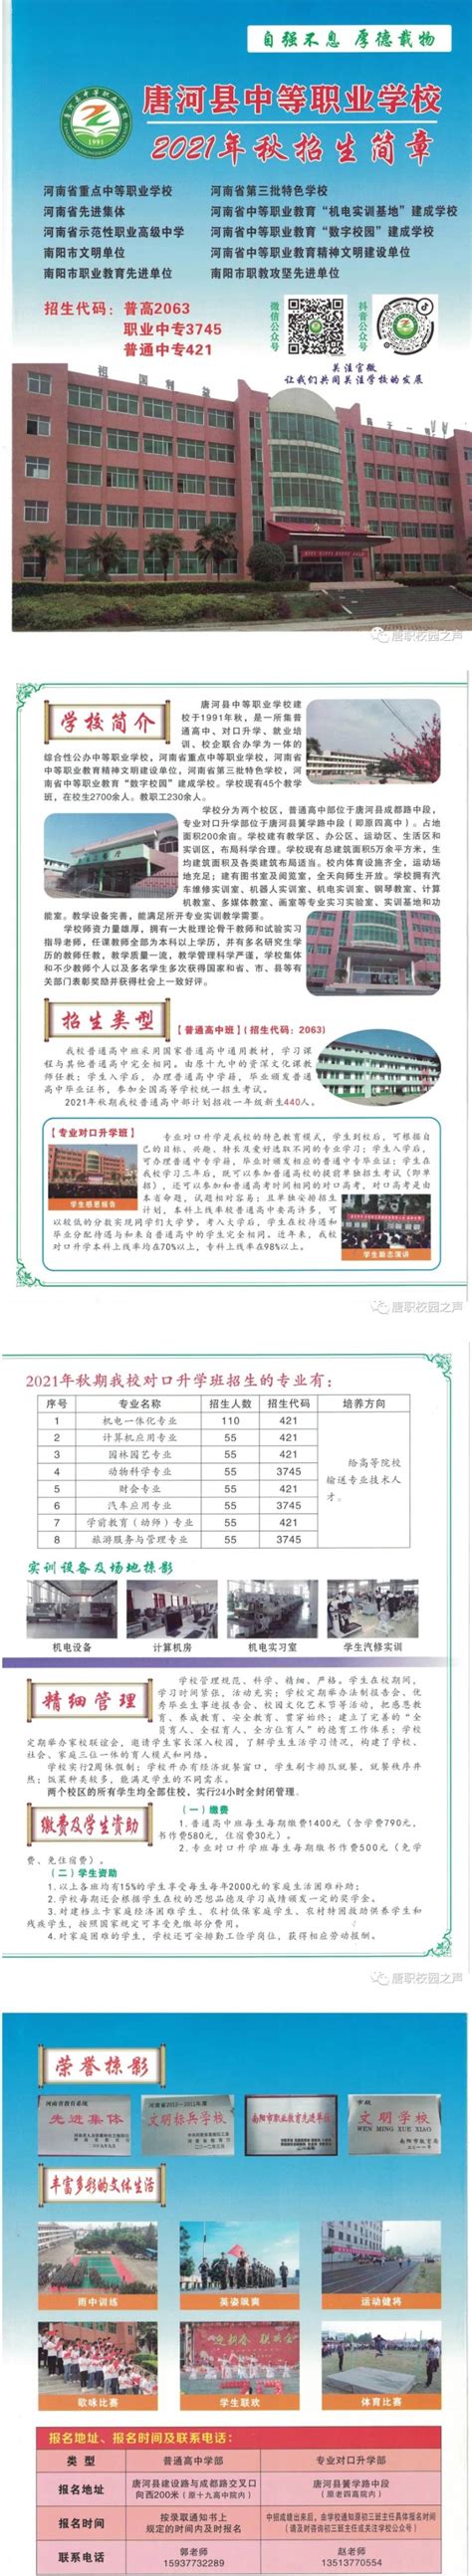 唐河县中等职业学校2021年招生简章 - 职教网